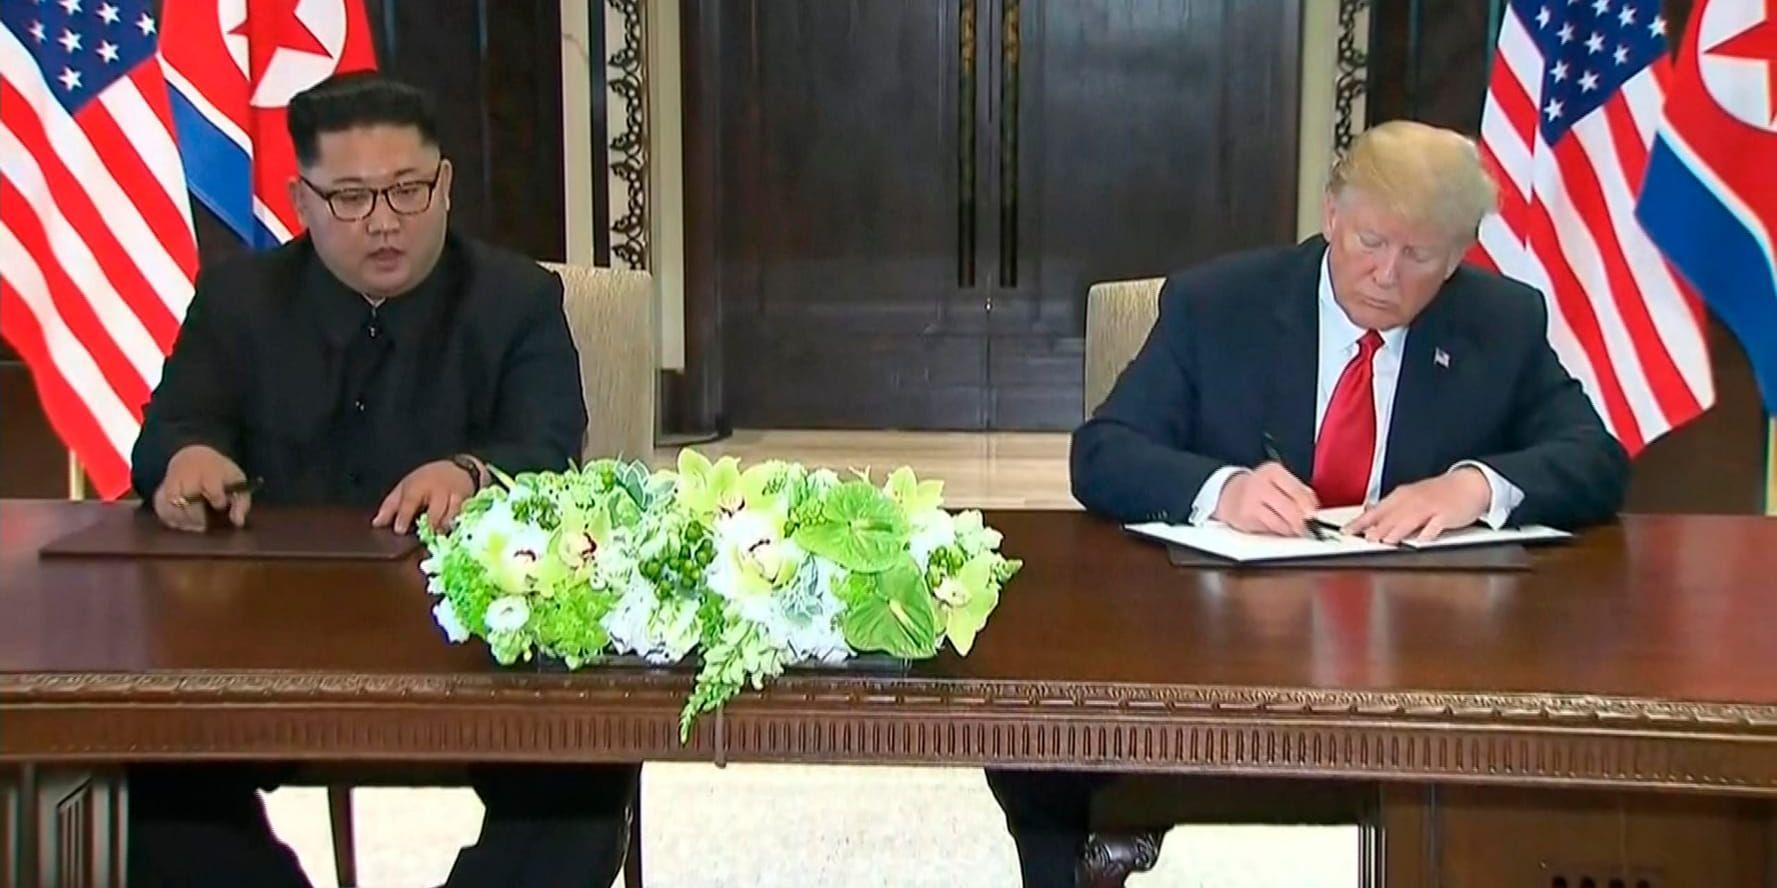 USA:s president Donald Trump och Nordkoreas ledare Kim Jong-Un har skrivit under ett gemensamt uttalande efter sitt historiska möte.